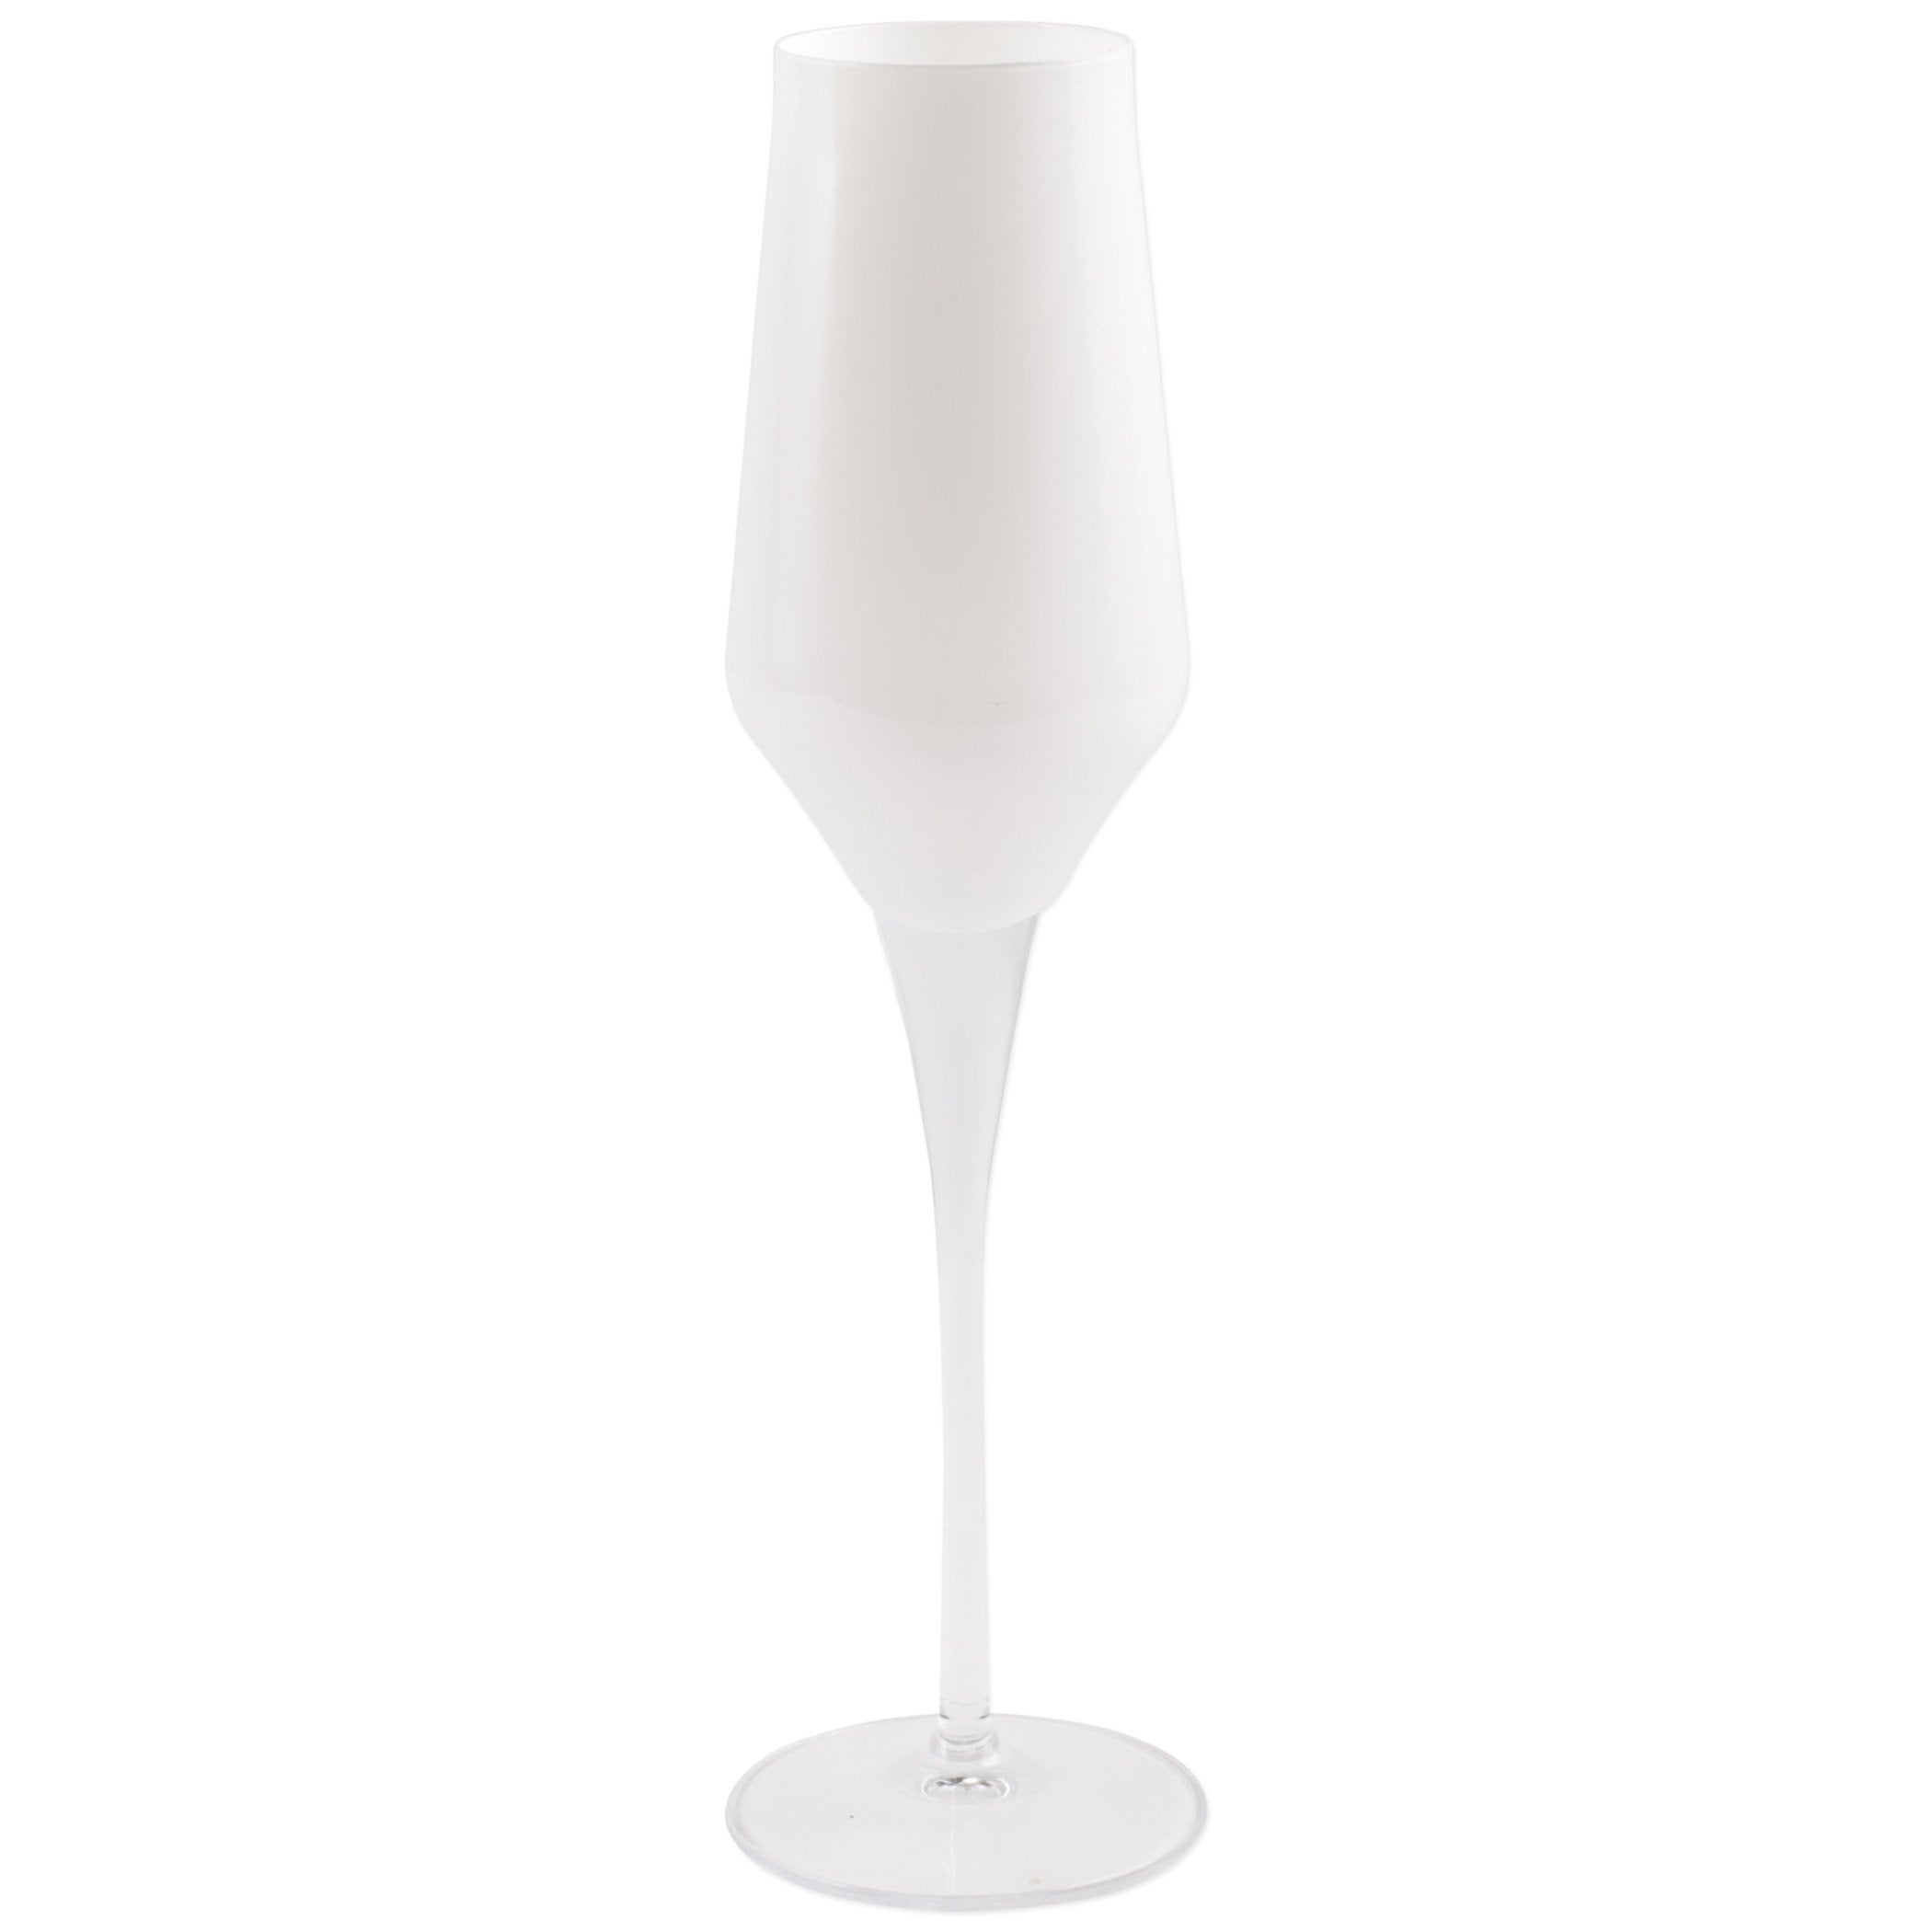 Contessa White Champagne Glass